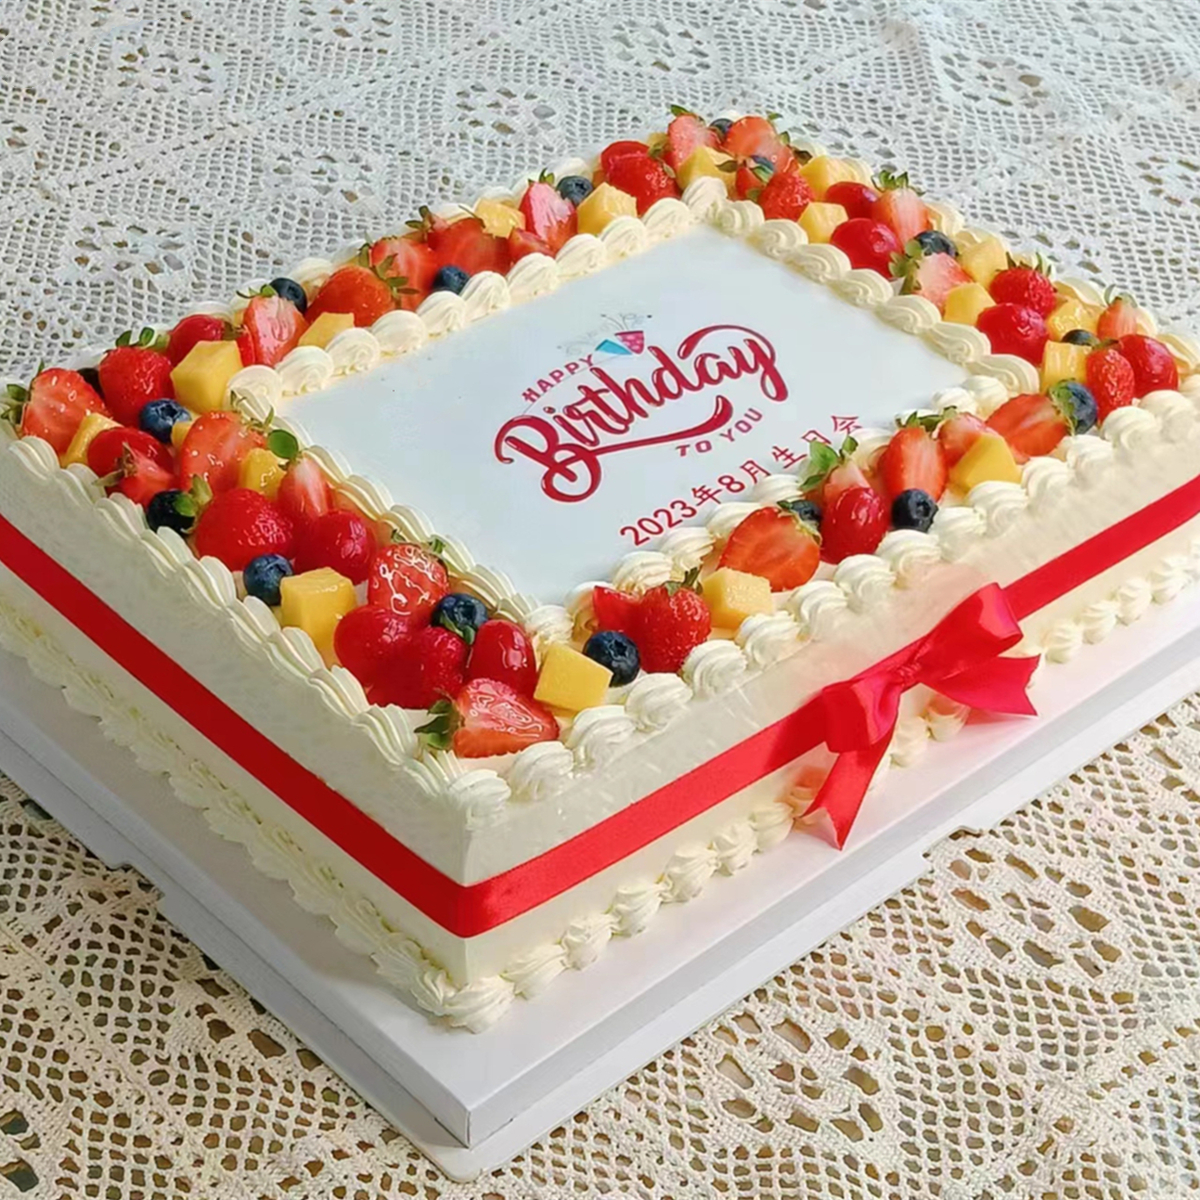 大型公司企业生日蛋糕 周年庆典数码定制长方形开业大吉北京 同城